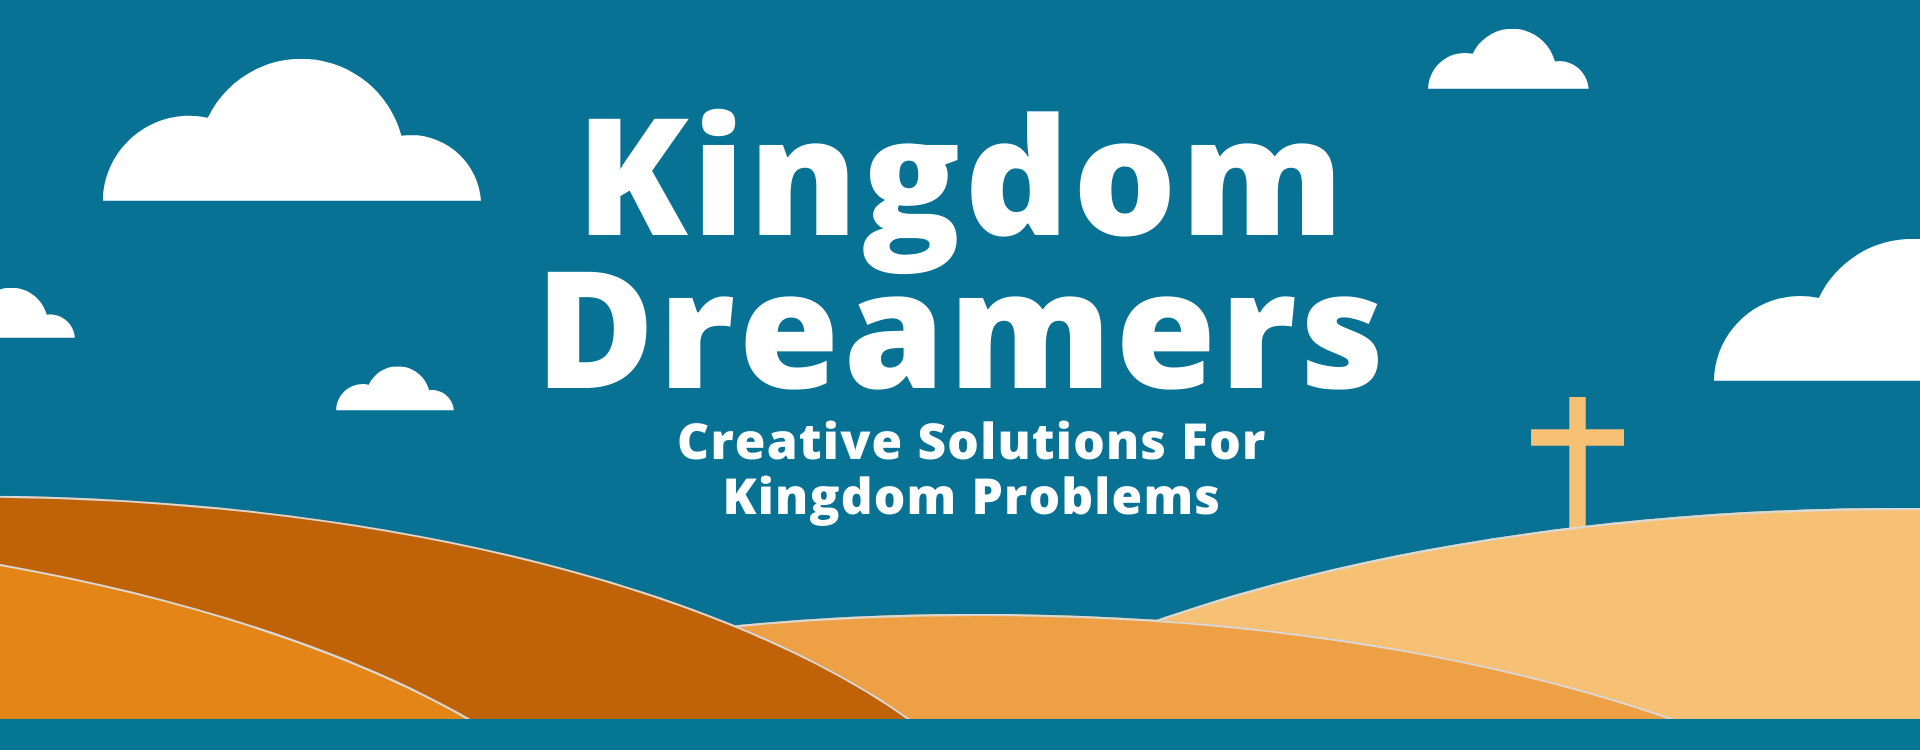 Kingdom Dreamers